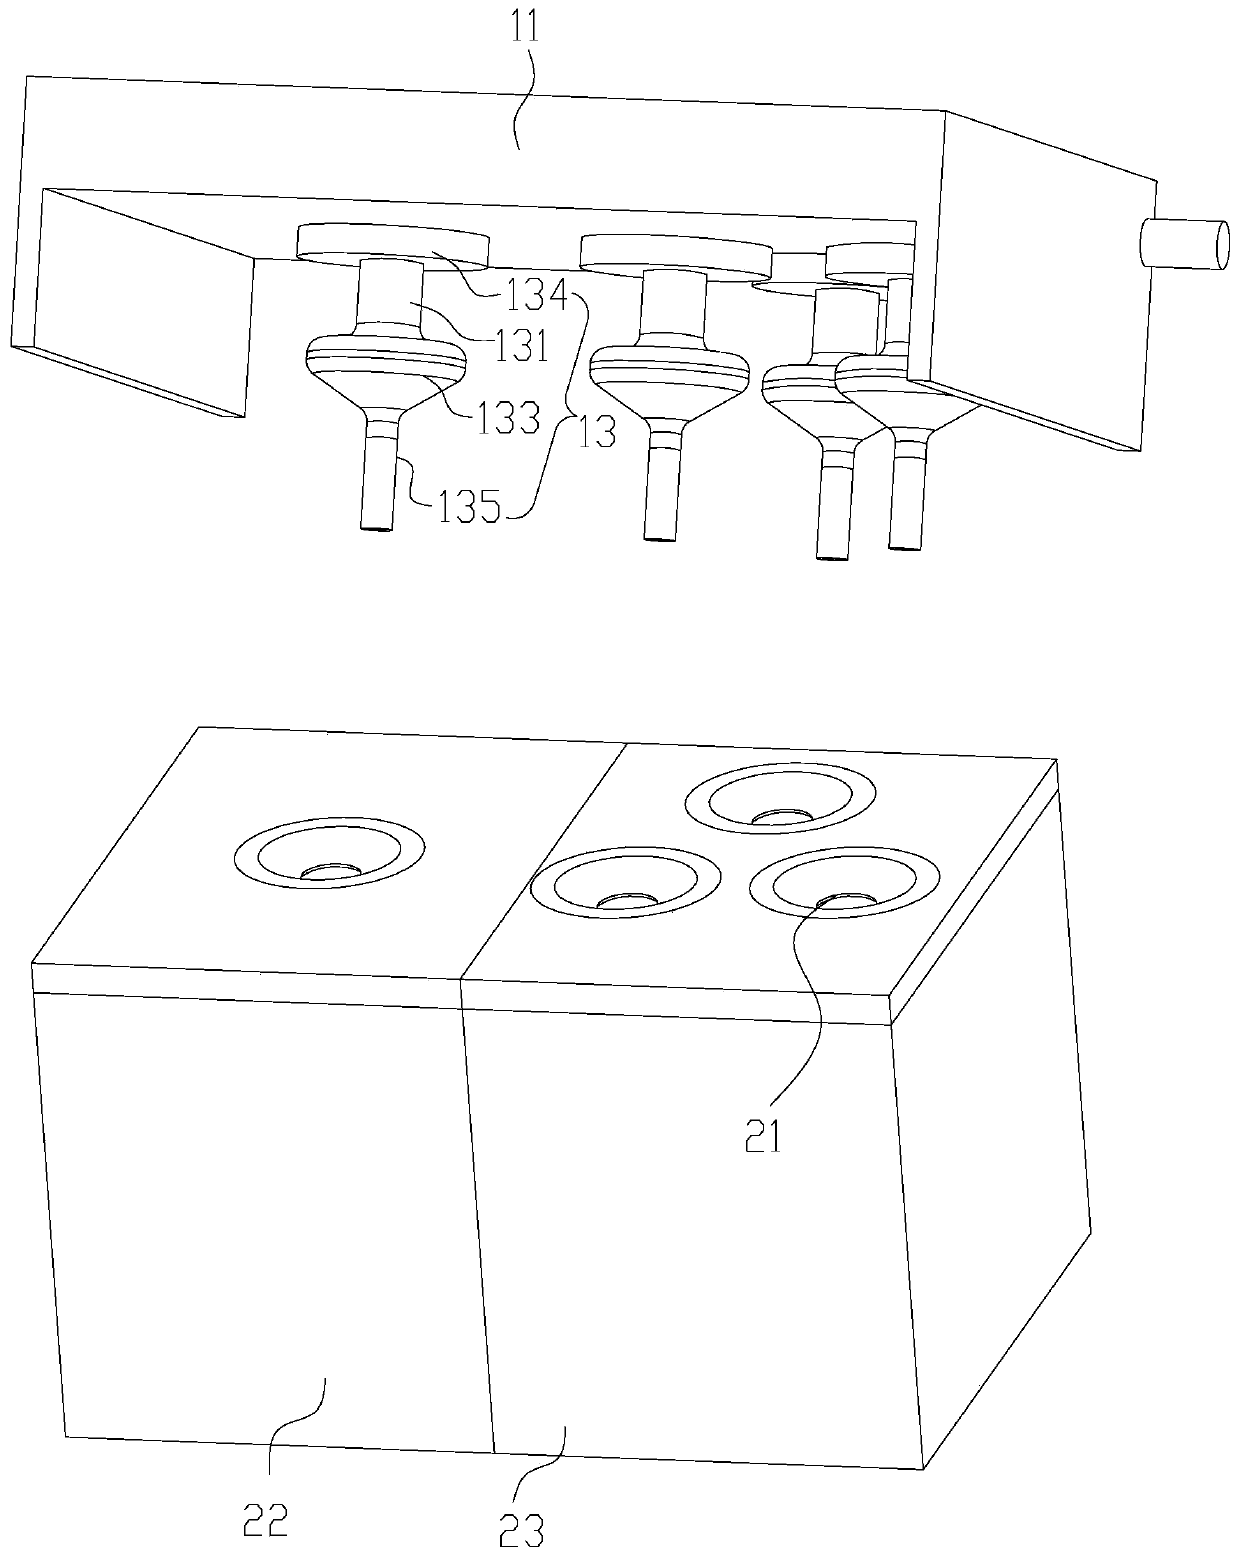 Ink box part and printing machine